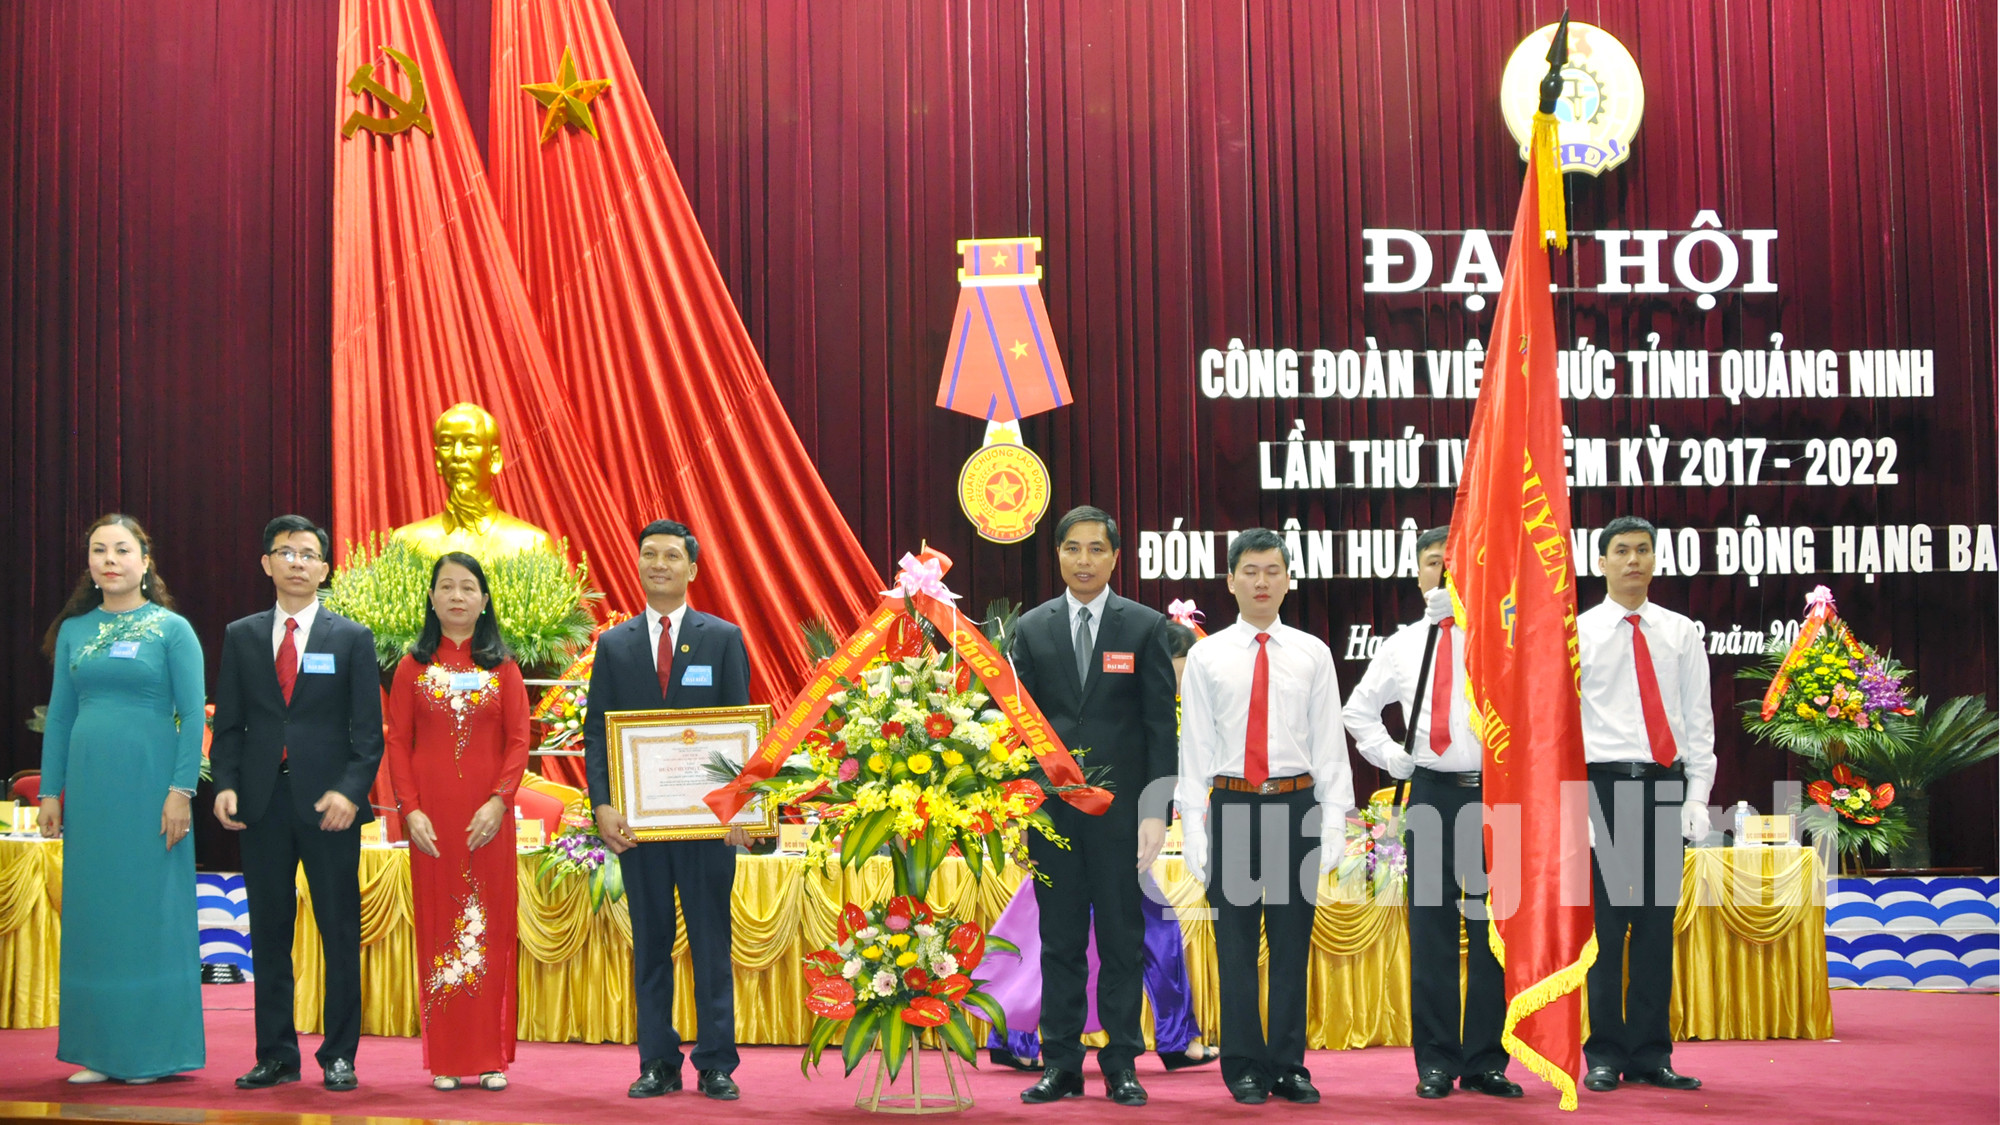 Đồng chí Vũ Văn Diện, Phó Chủ tịch UBND tỉnh, trao Huân chương Lao động hạng Ba cho Công đoàn Viên chức tỉnh.